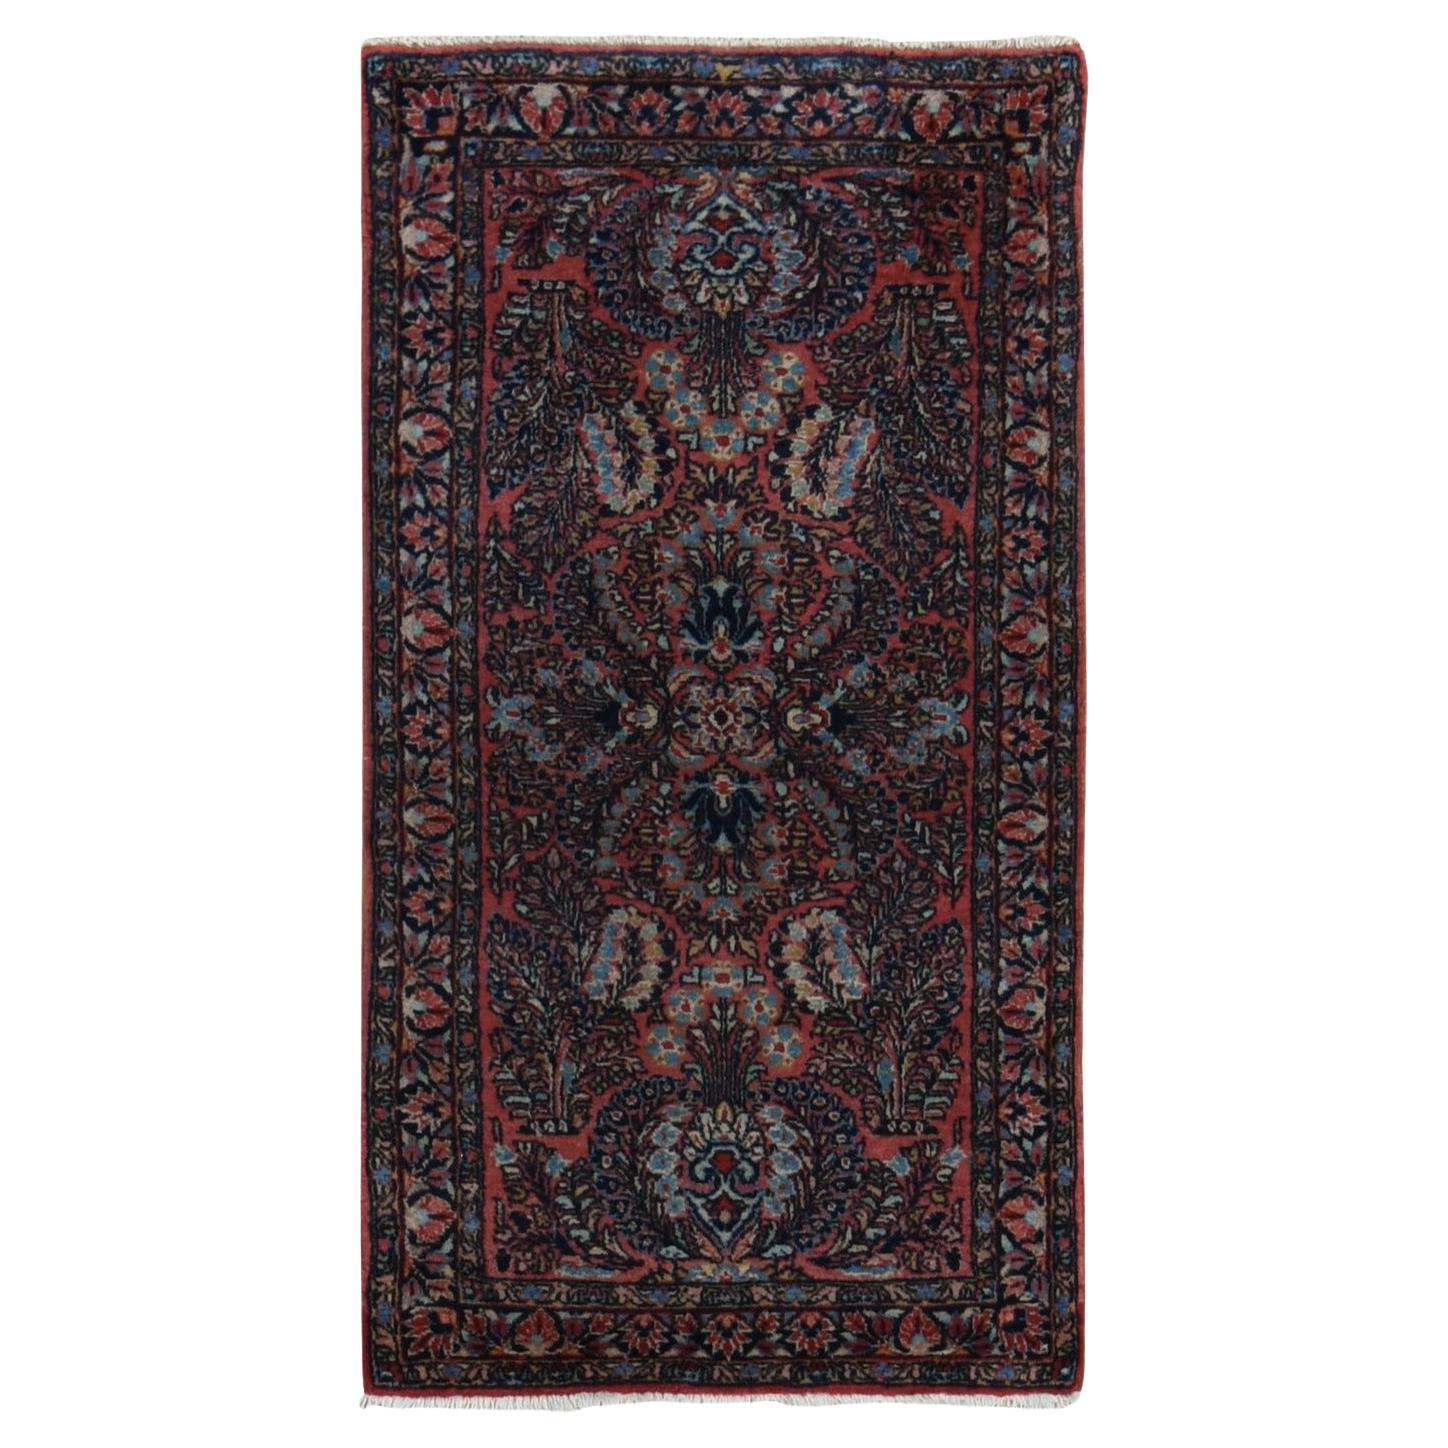 Roter antiker persischer Sarouk-Teppich in Rot, voller Flor, sauber und weich, handgeknüpft, 2'1"x4'